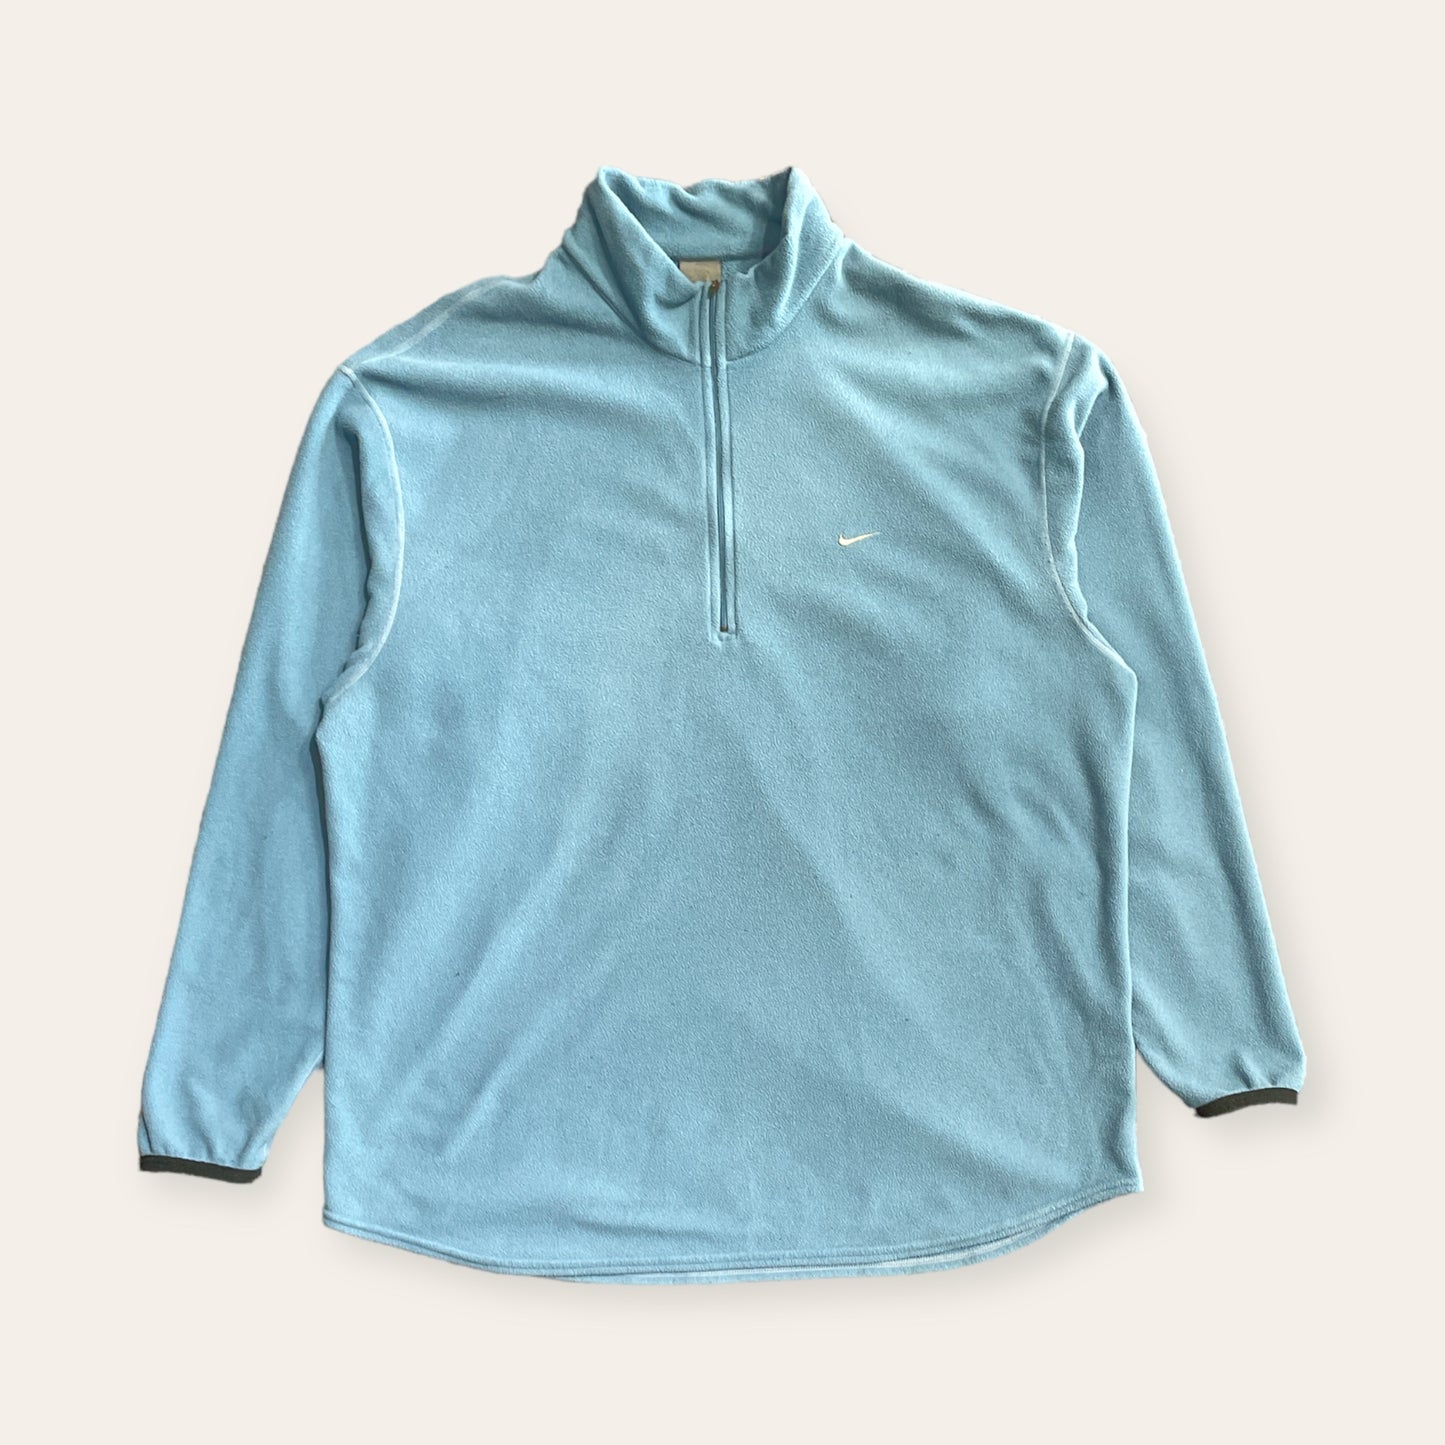 Nike 1/4 Zip Fleece Sweater Blue Size XL